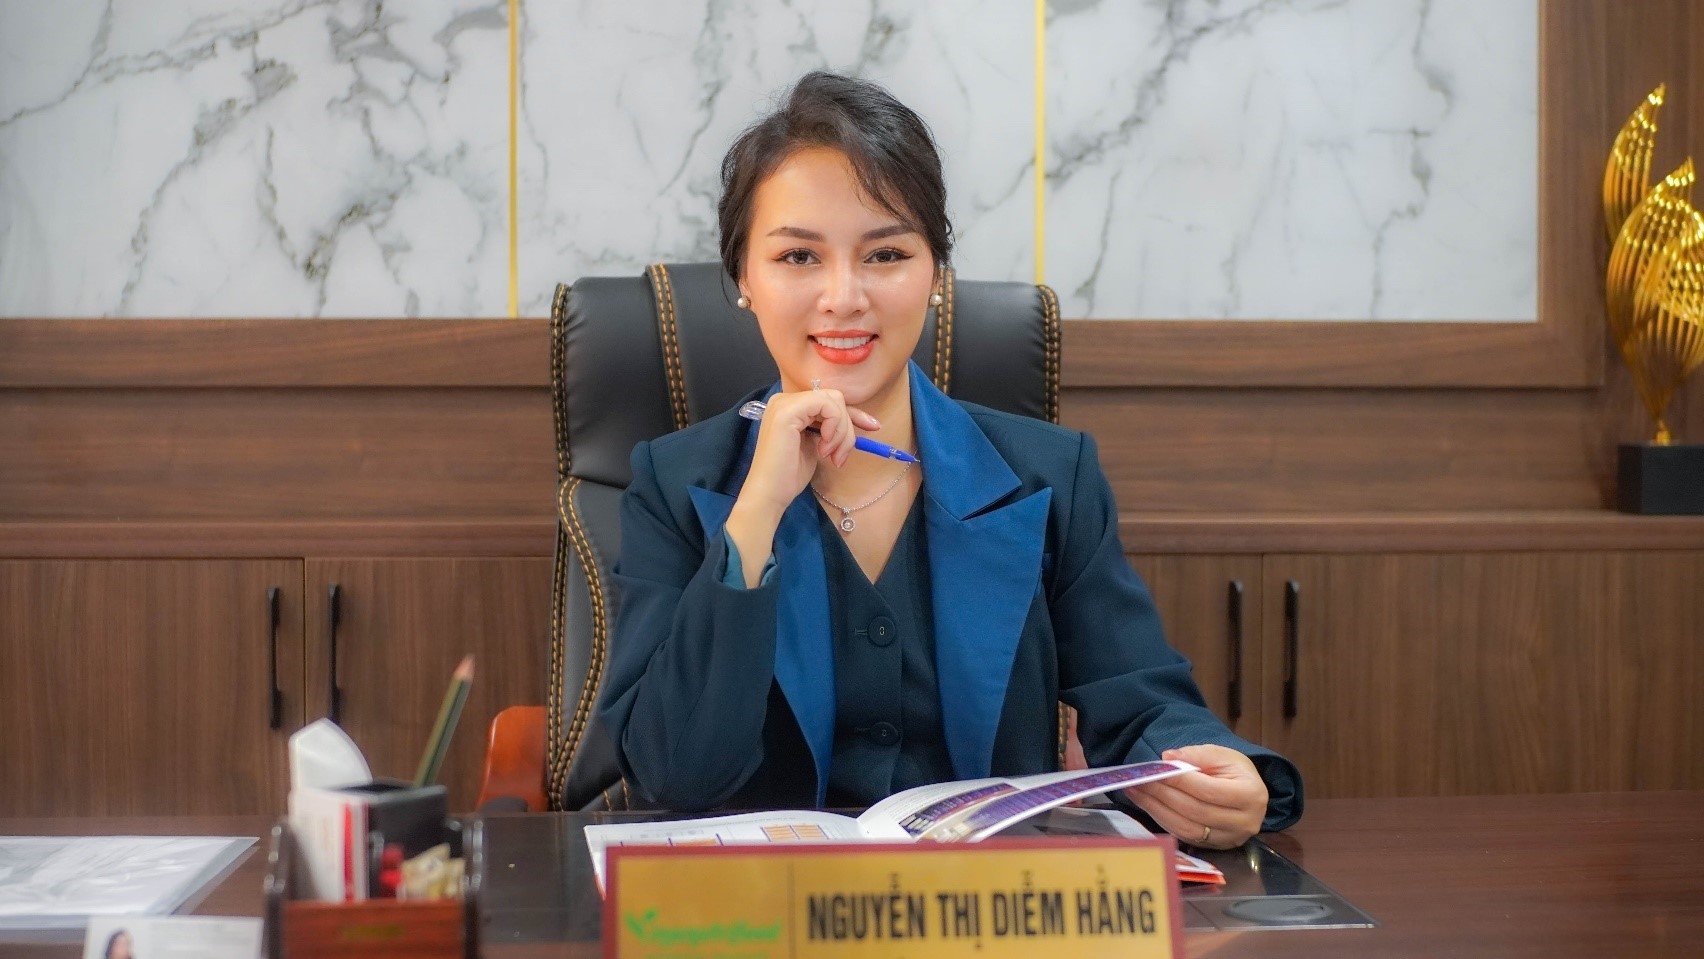 Doanh nhân Nguyễn Thị Diễm Hằng, phó chủ tịch Vinapharma-Group. Ảnh: Nhân vật cung cấp.